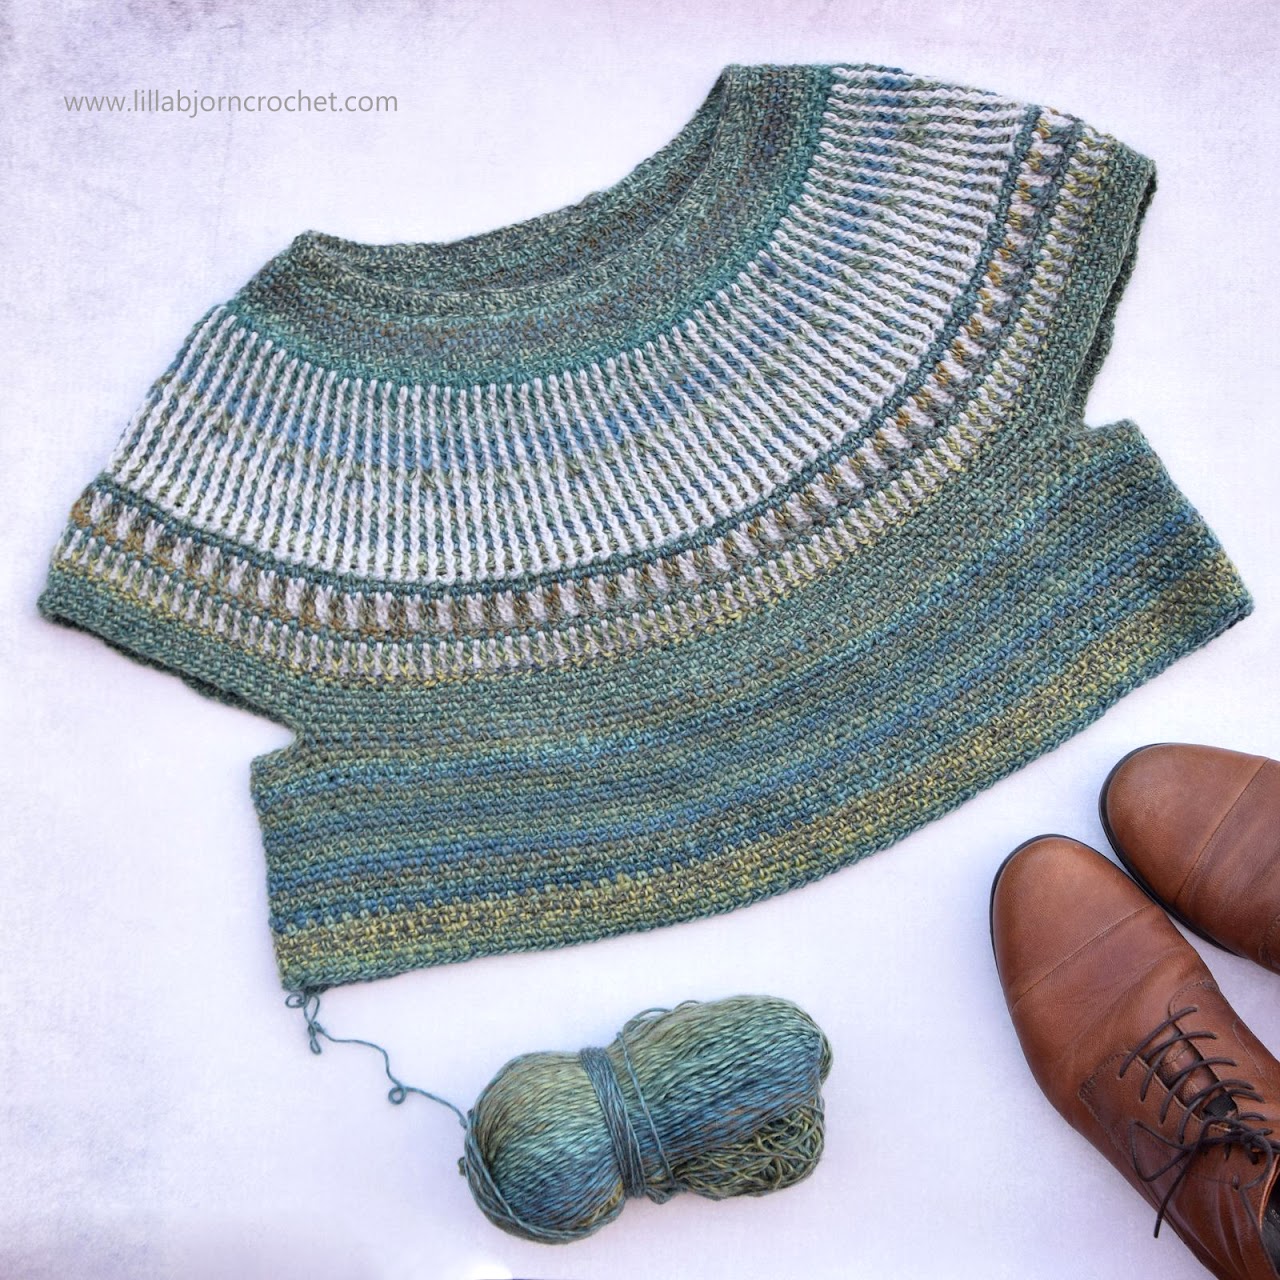 Esja Sweater crochet pattern by www.lillabjorncrochet.com